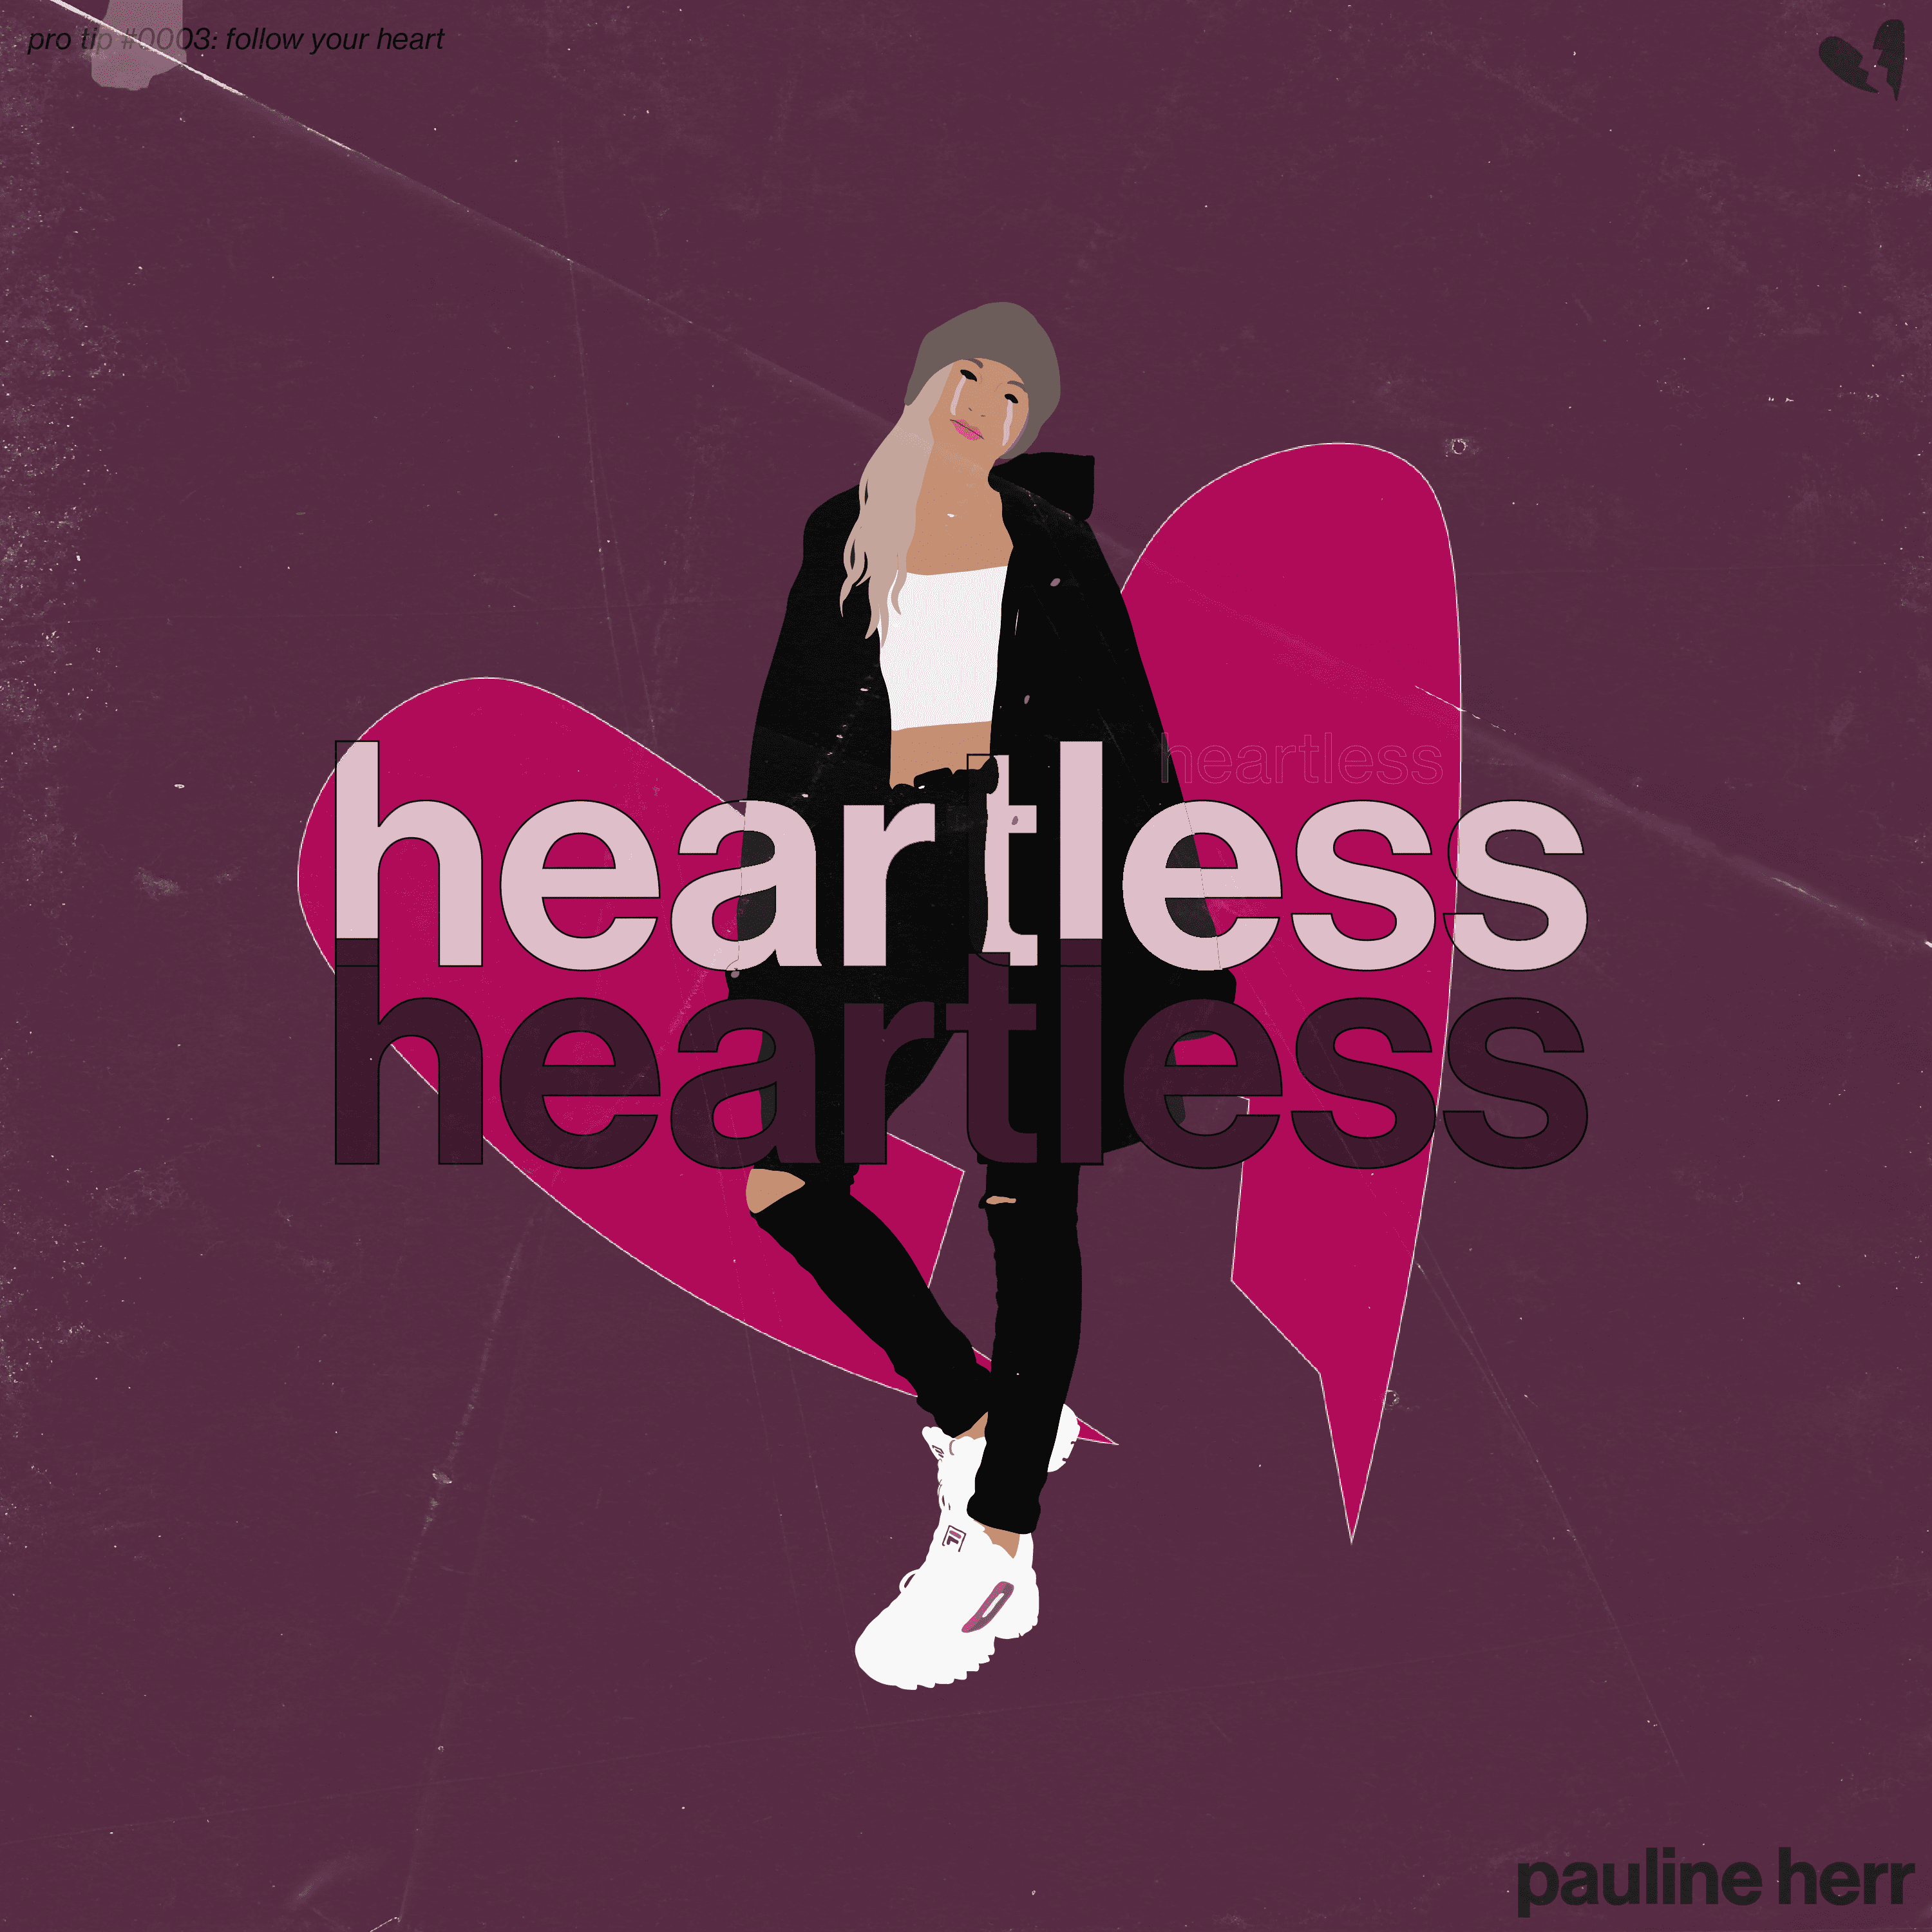 Cover art for Pauline Herr ｡･:*:･ﾟ☆'s song: Heartless